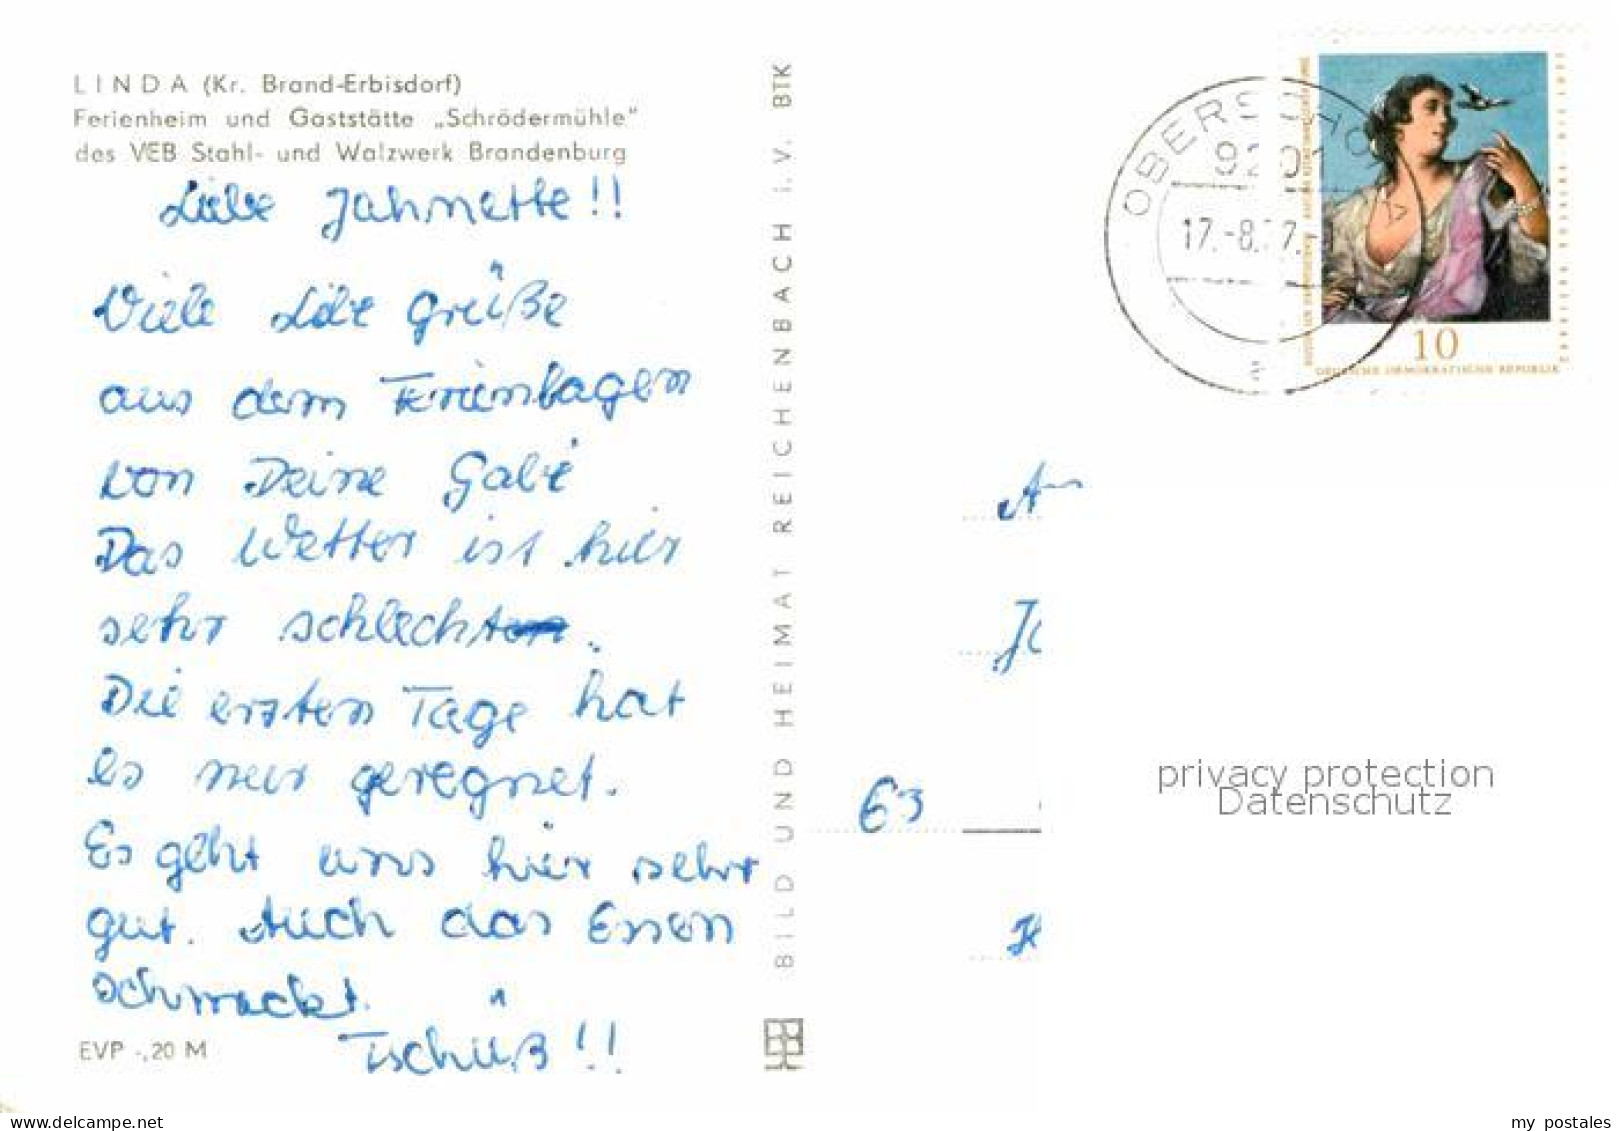 72635963 Linda Brand-Erbisdorf Ferienheim Gaststaette Schroedermuehle VEB Stahl  - Brand-Erbisdorf